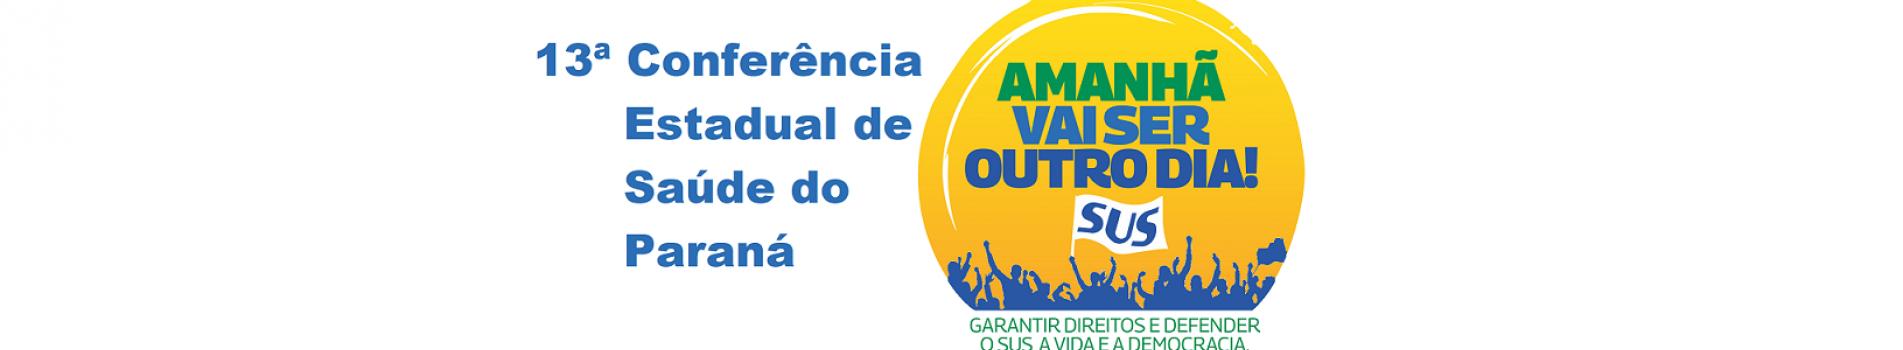 13ª Conferência Estadual de Saúde do Paraná